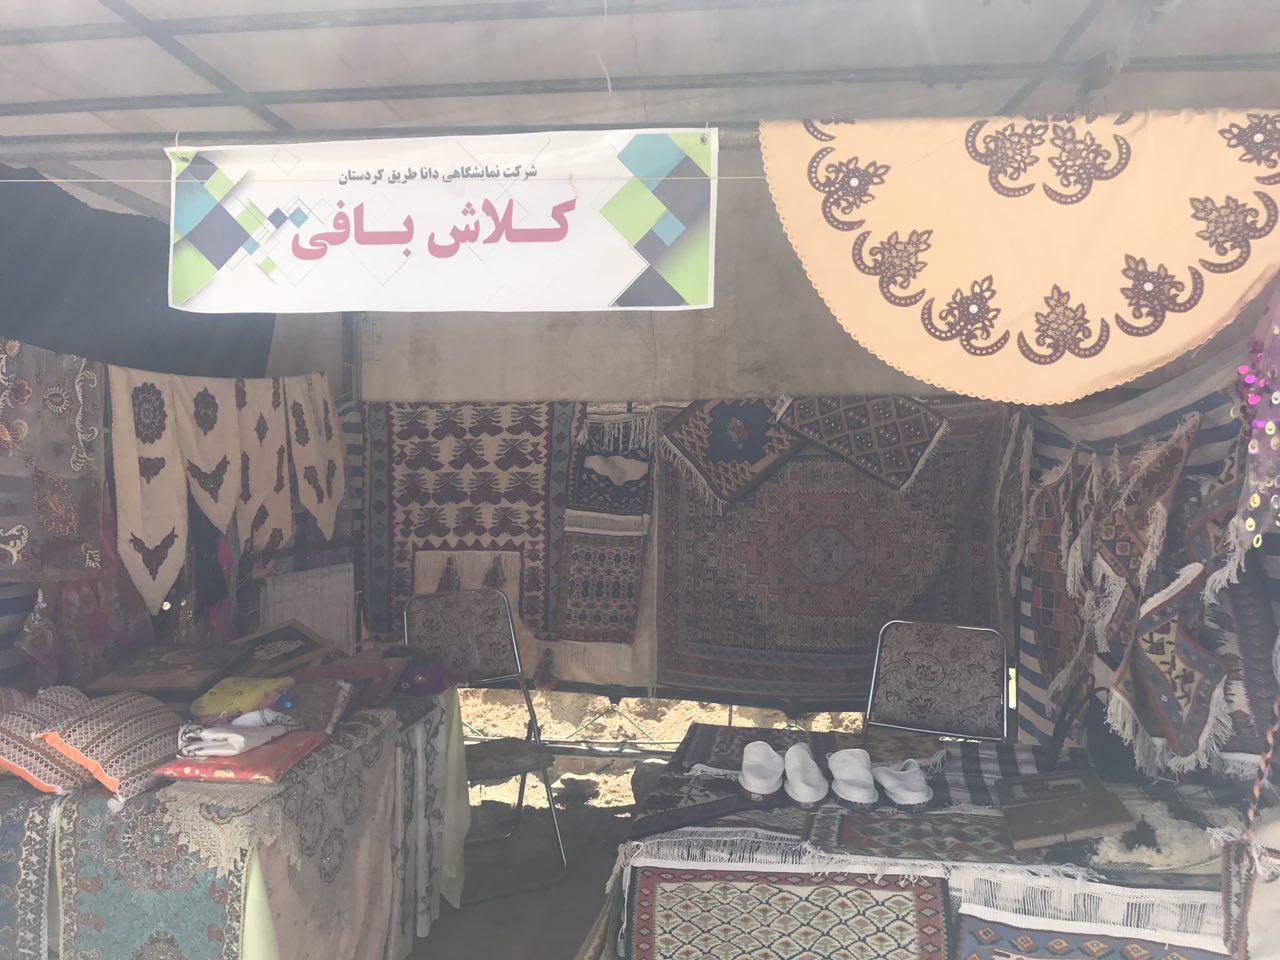 نمایشگاه صنایع دستی و سوغات کردستان در دانشگاه کردستان برپاست